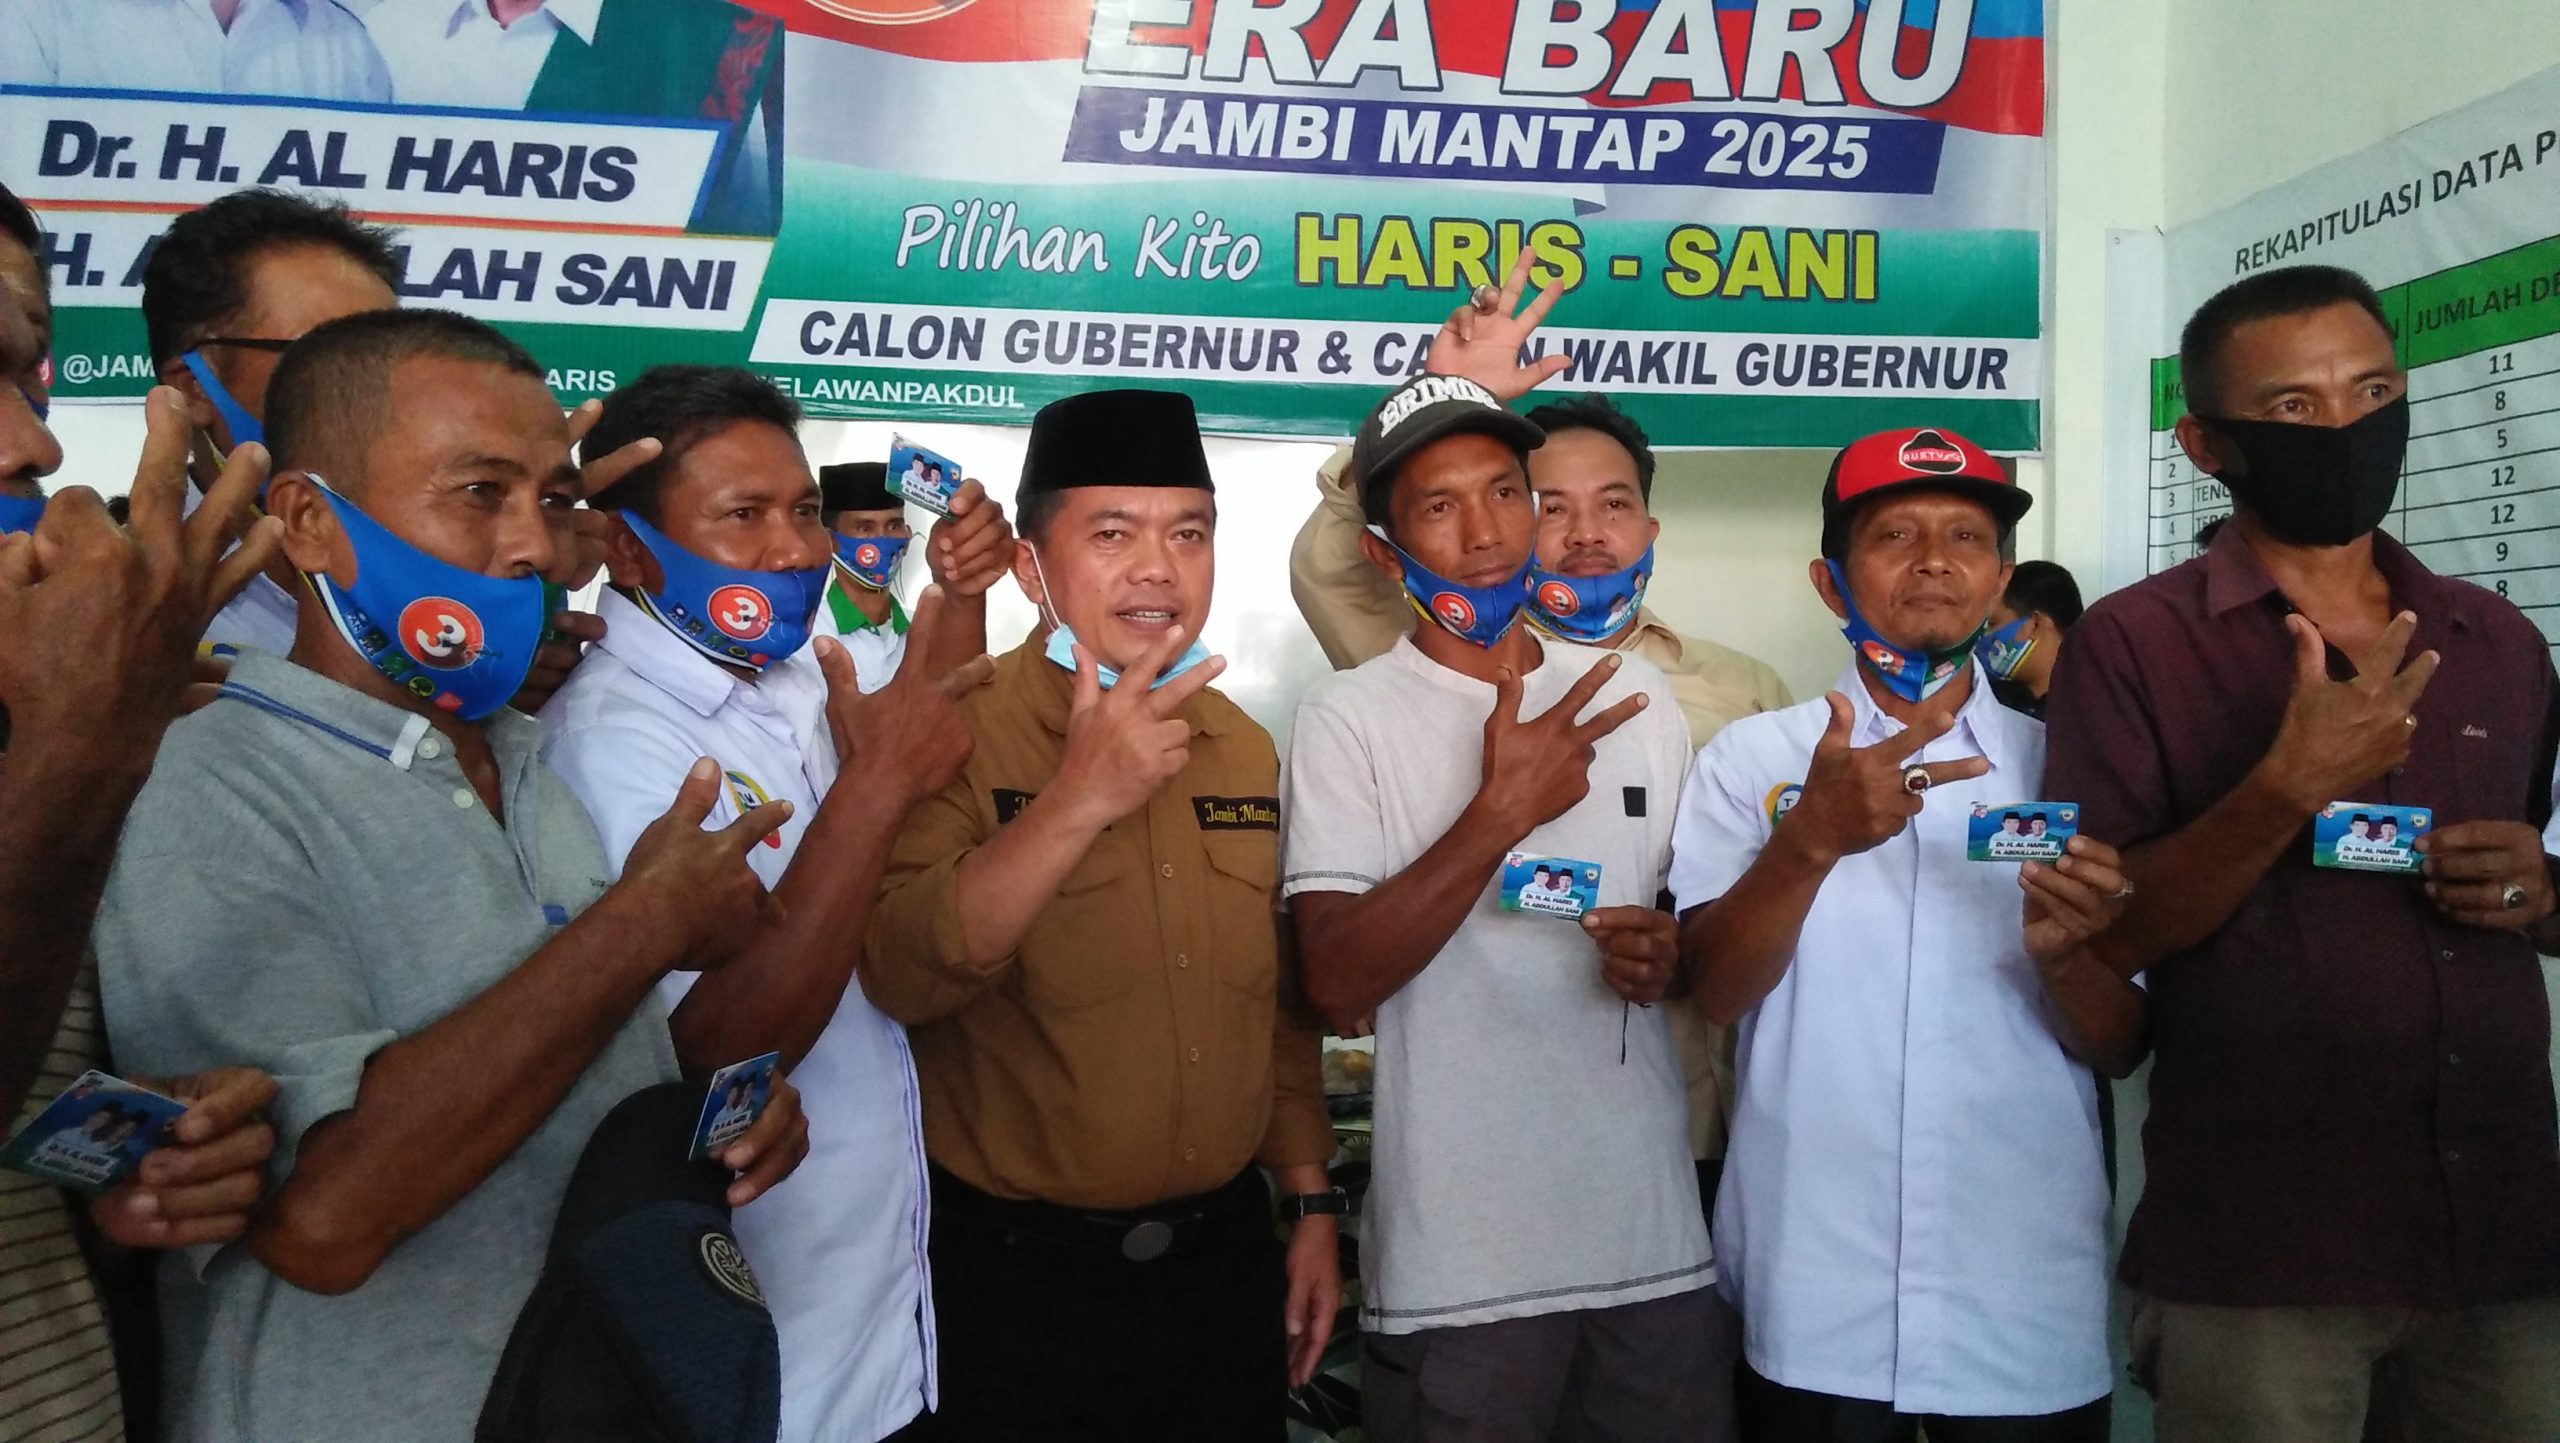 Al Haris : Kalau warga Jawa ingin wakil gubernur warga Jawa, ini sudah waktunya